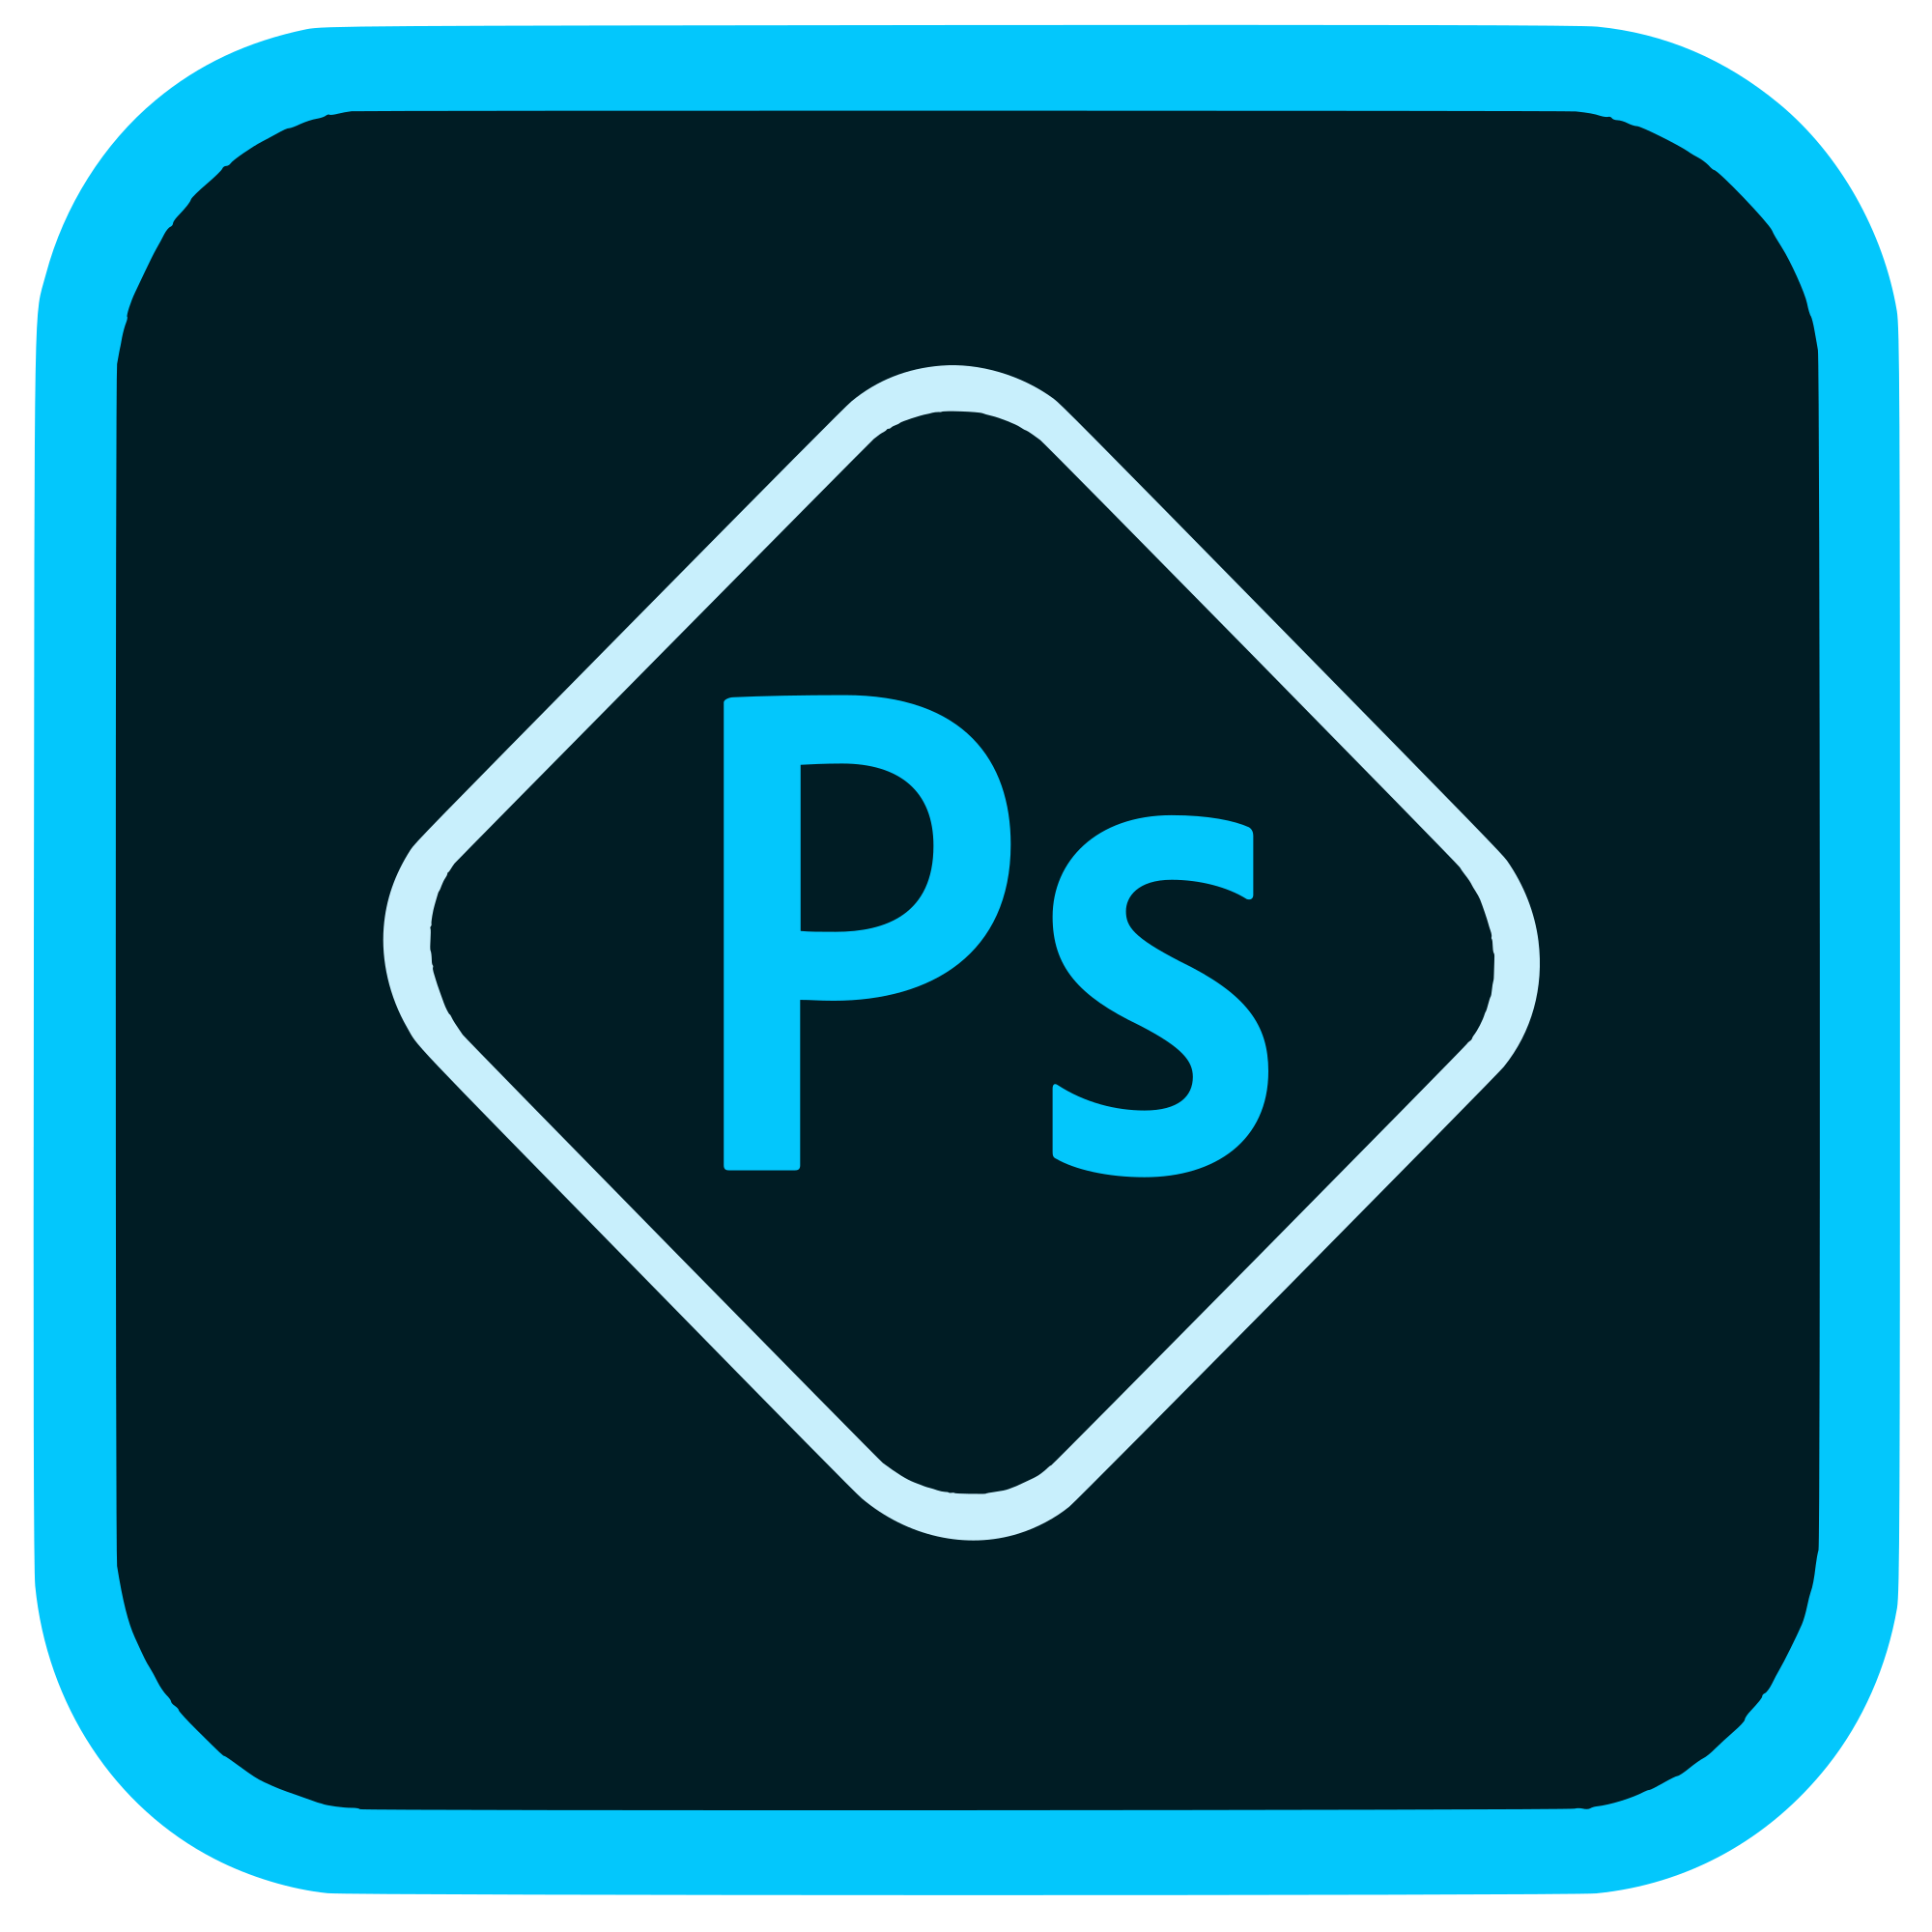 Photoshop Logo - File:Adobe Photoshop Express logo.svg - Wikimedia Commons